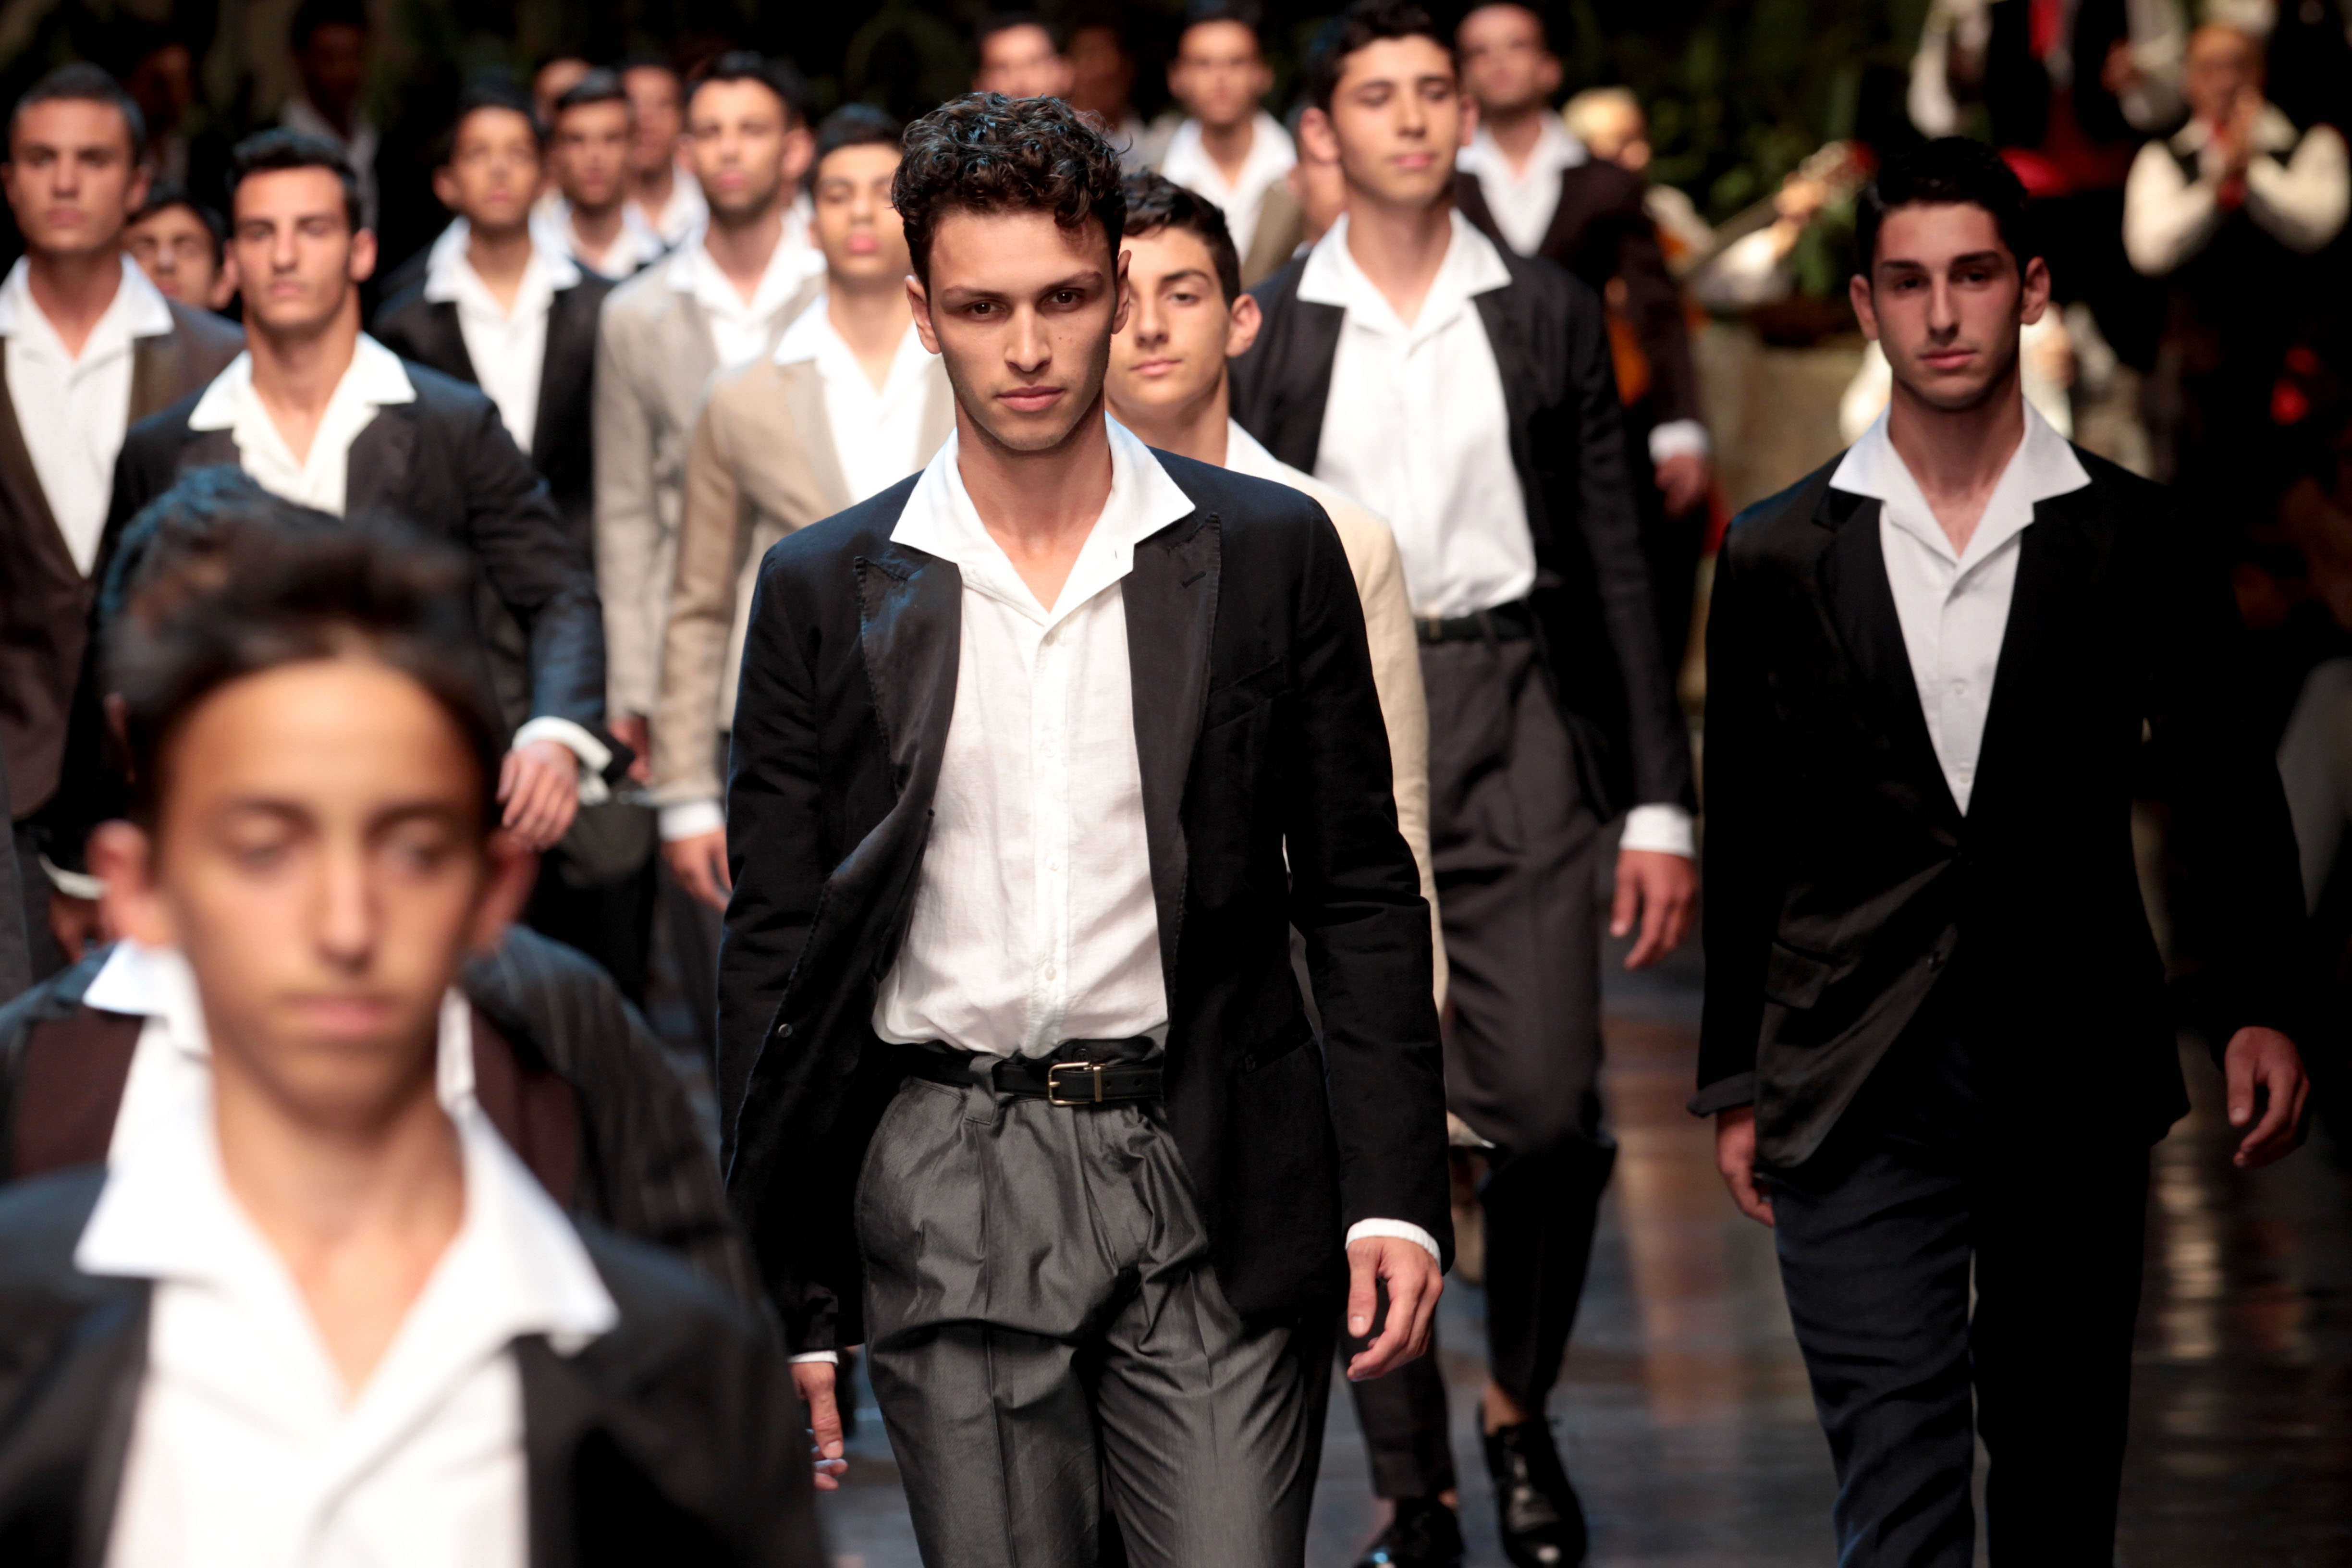 Milano Moda Uomo 2012: le sfilate più belle delle prime giornate